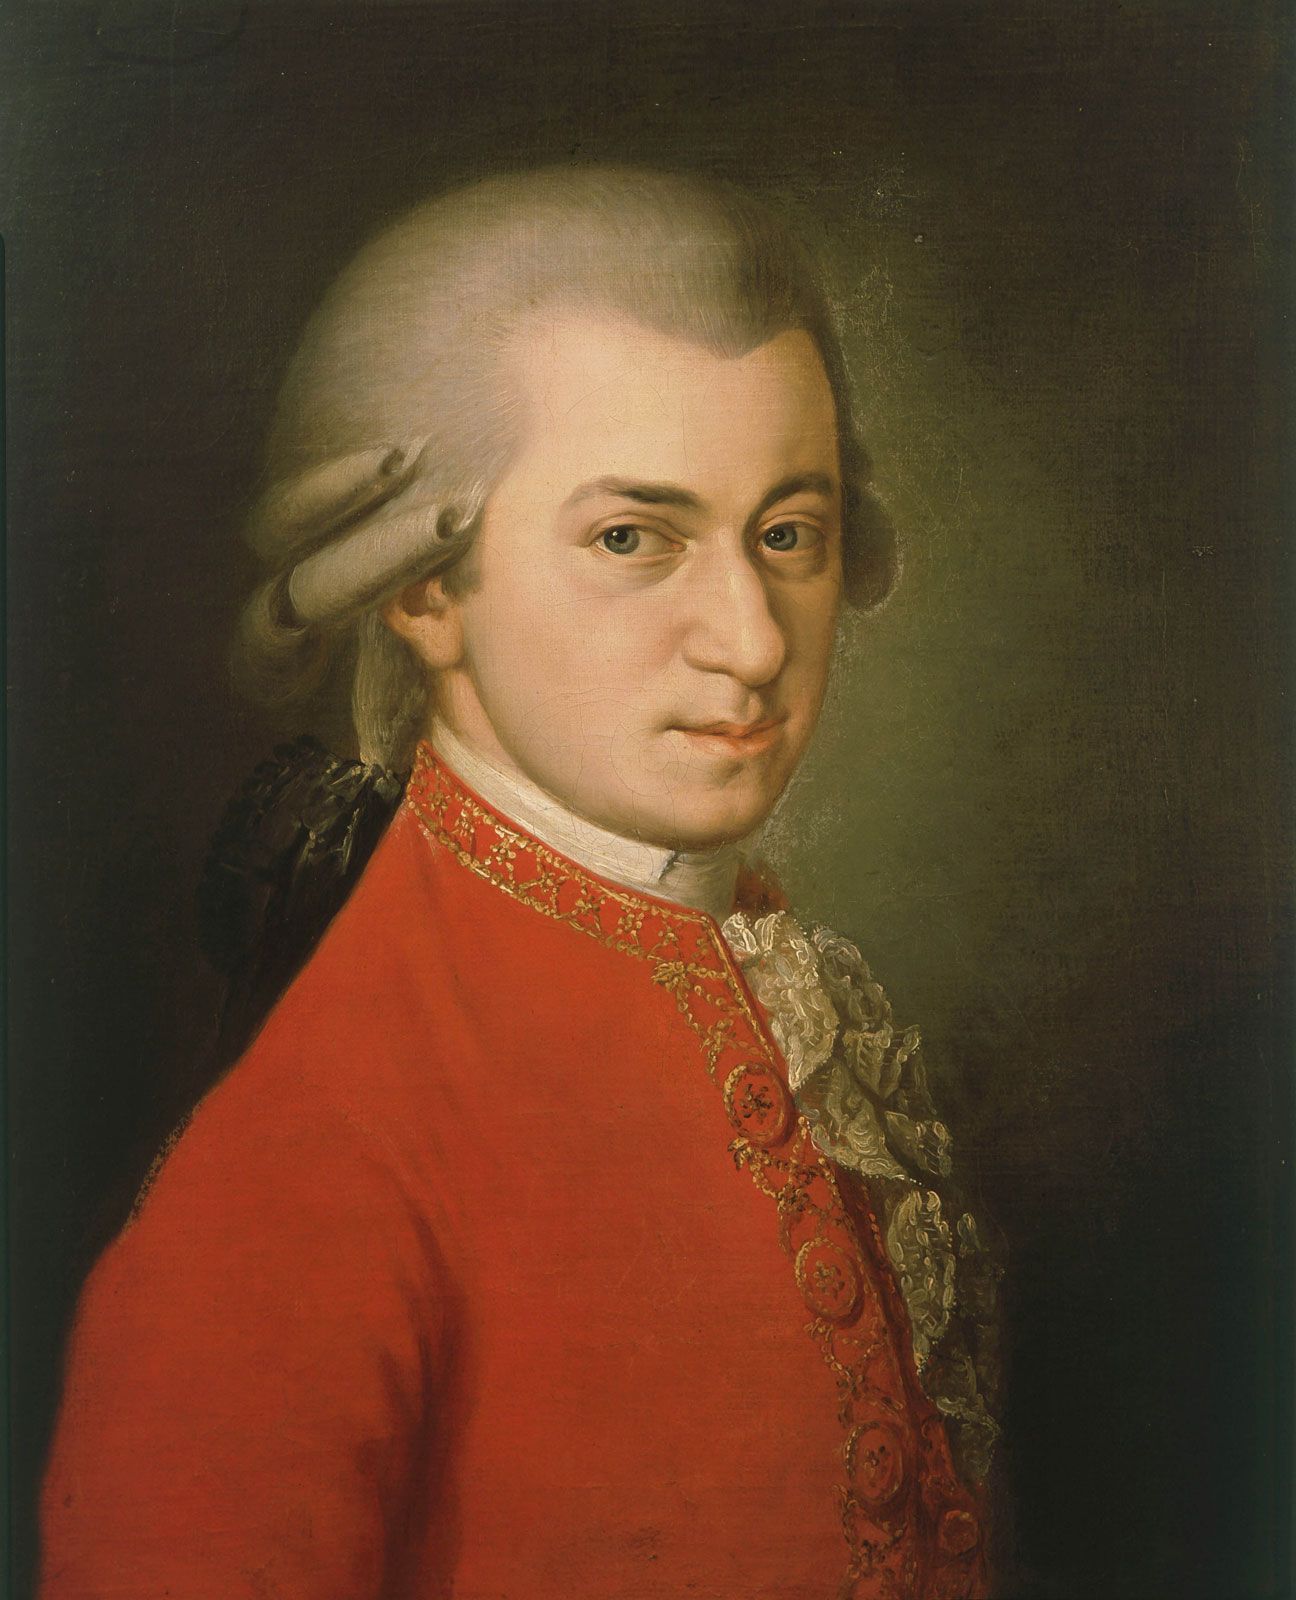  Biografie von Wolfgang Amadeus Mozart